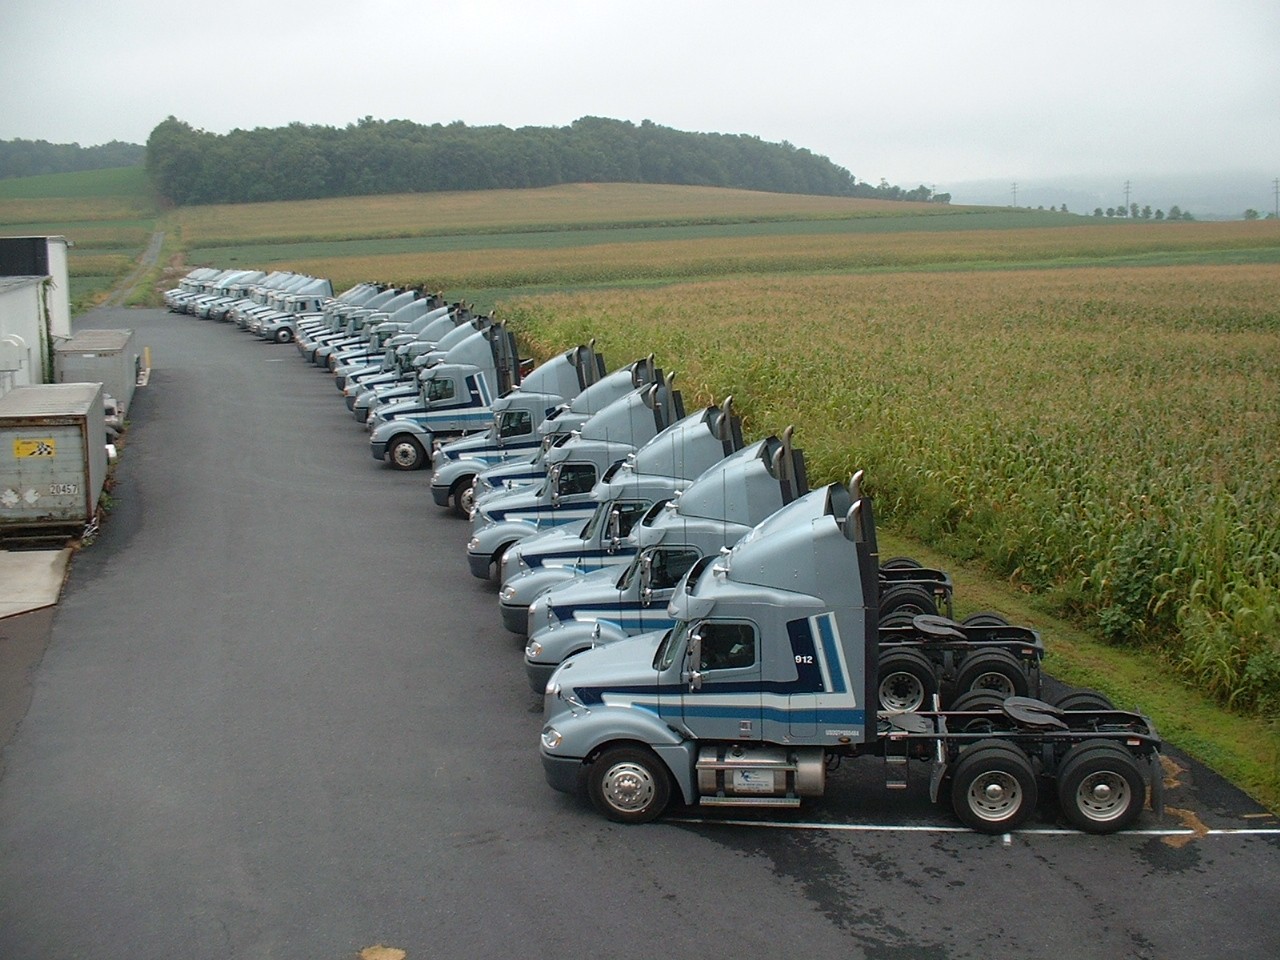 Just a few of Xpressway’s 70 Tractors